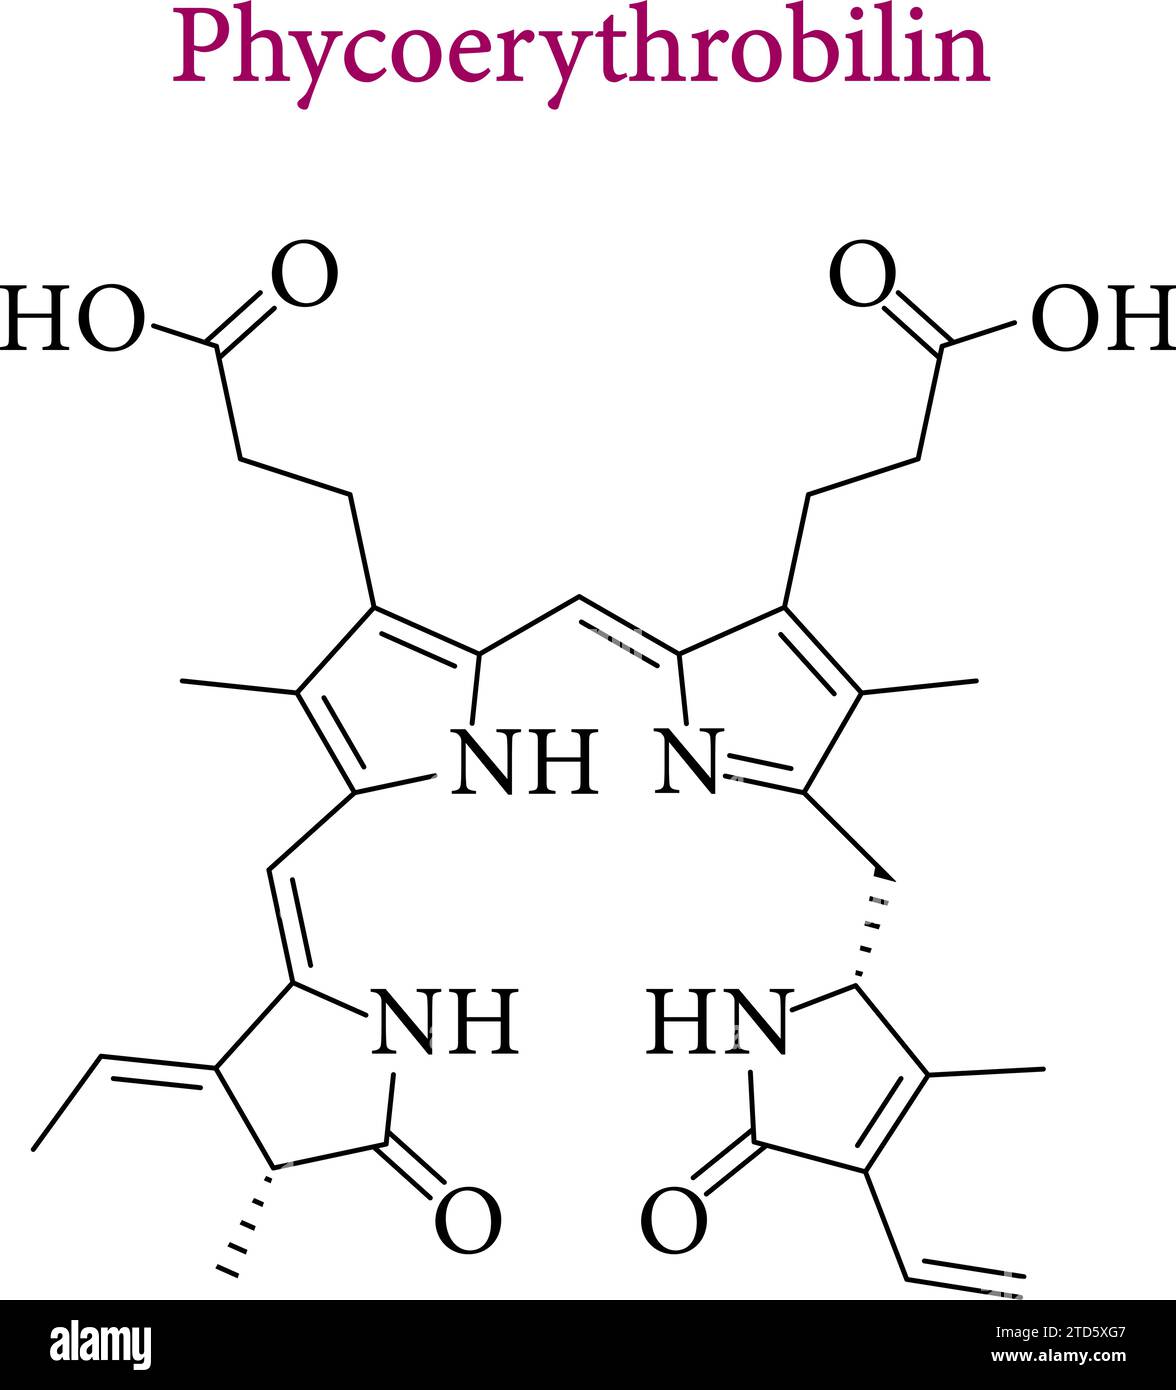 A chemical diagram of phycoerythrobilin.Vector illustration. Stock Vector